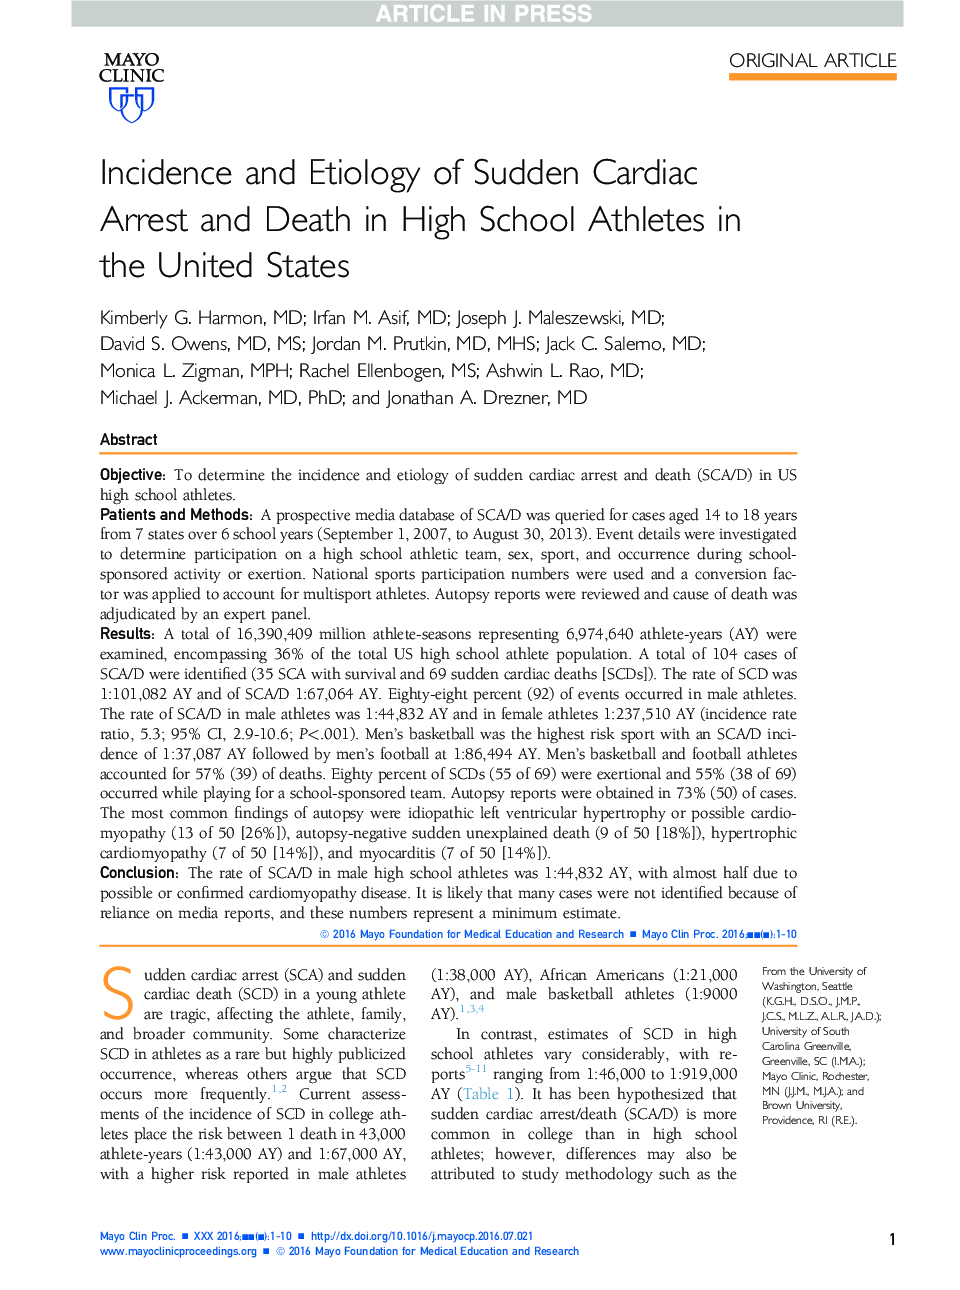 بروز و علل اتفاقی ناگهانی قلبی و مرگ در ورزشکاران دبیرستان در ایالات متحده 